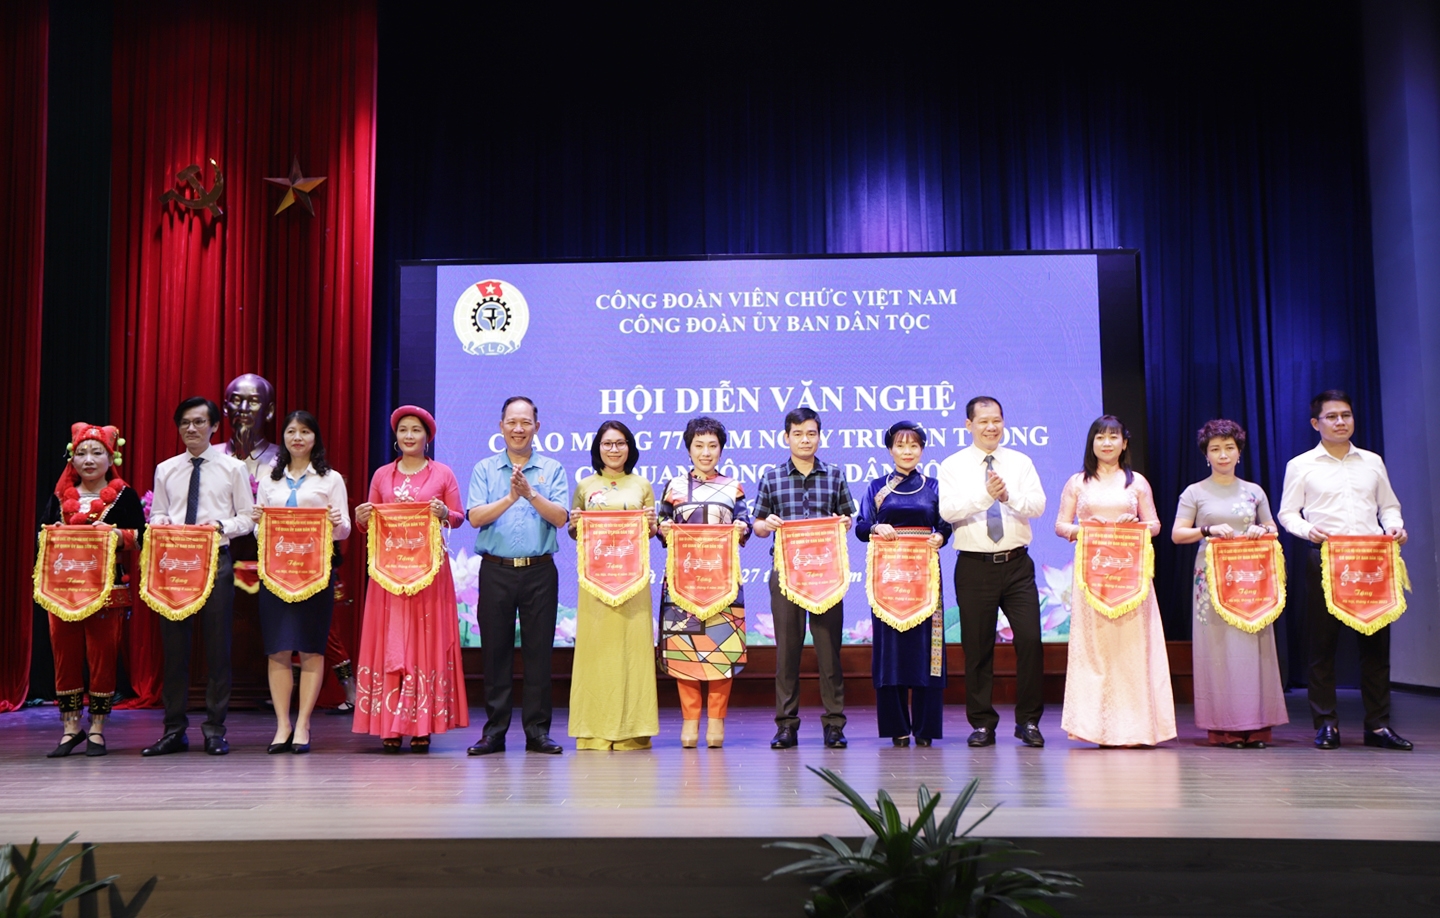 Chủ tịch Công đoàn UBDT Nguyễn Quang Hải và Phó Chủ tịch Công đoàn UBDT Lý Bình Huy tặng Cờ lưu niệm cho các đội thi